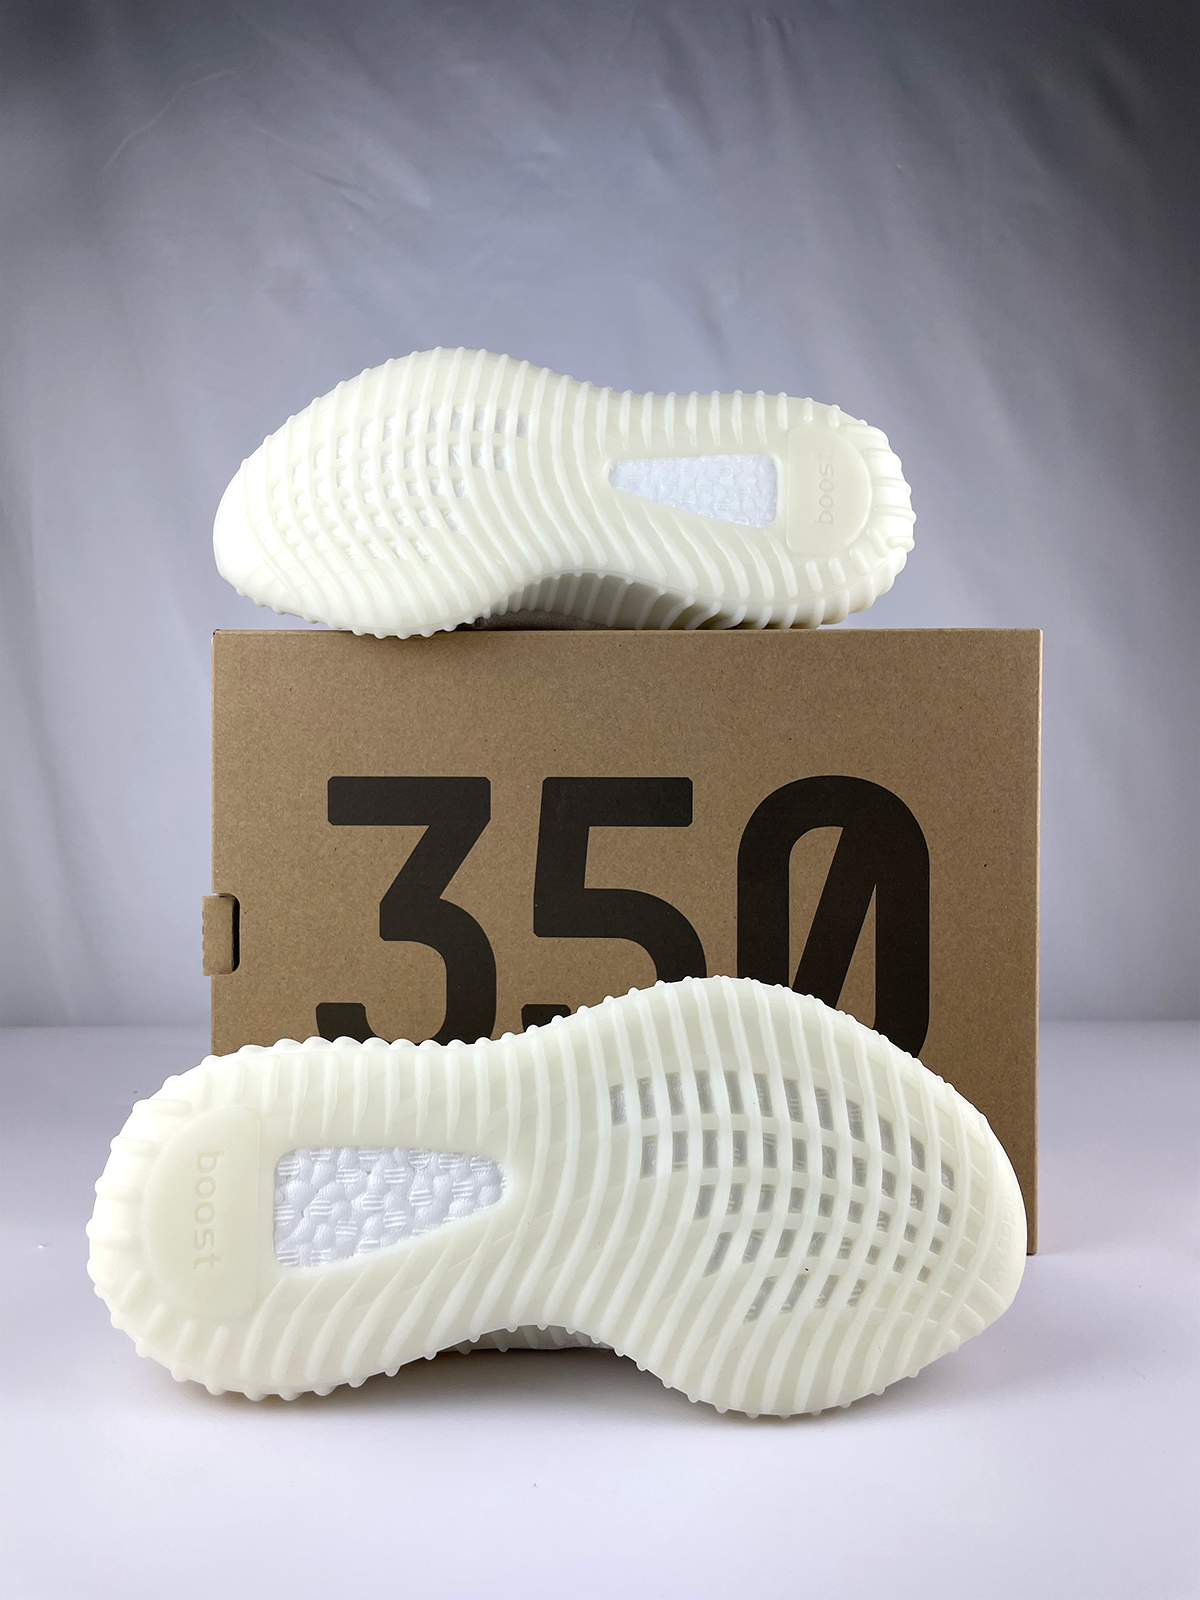 Adidas Yeezy Boost 350 V2 'Bone' 11.5